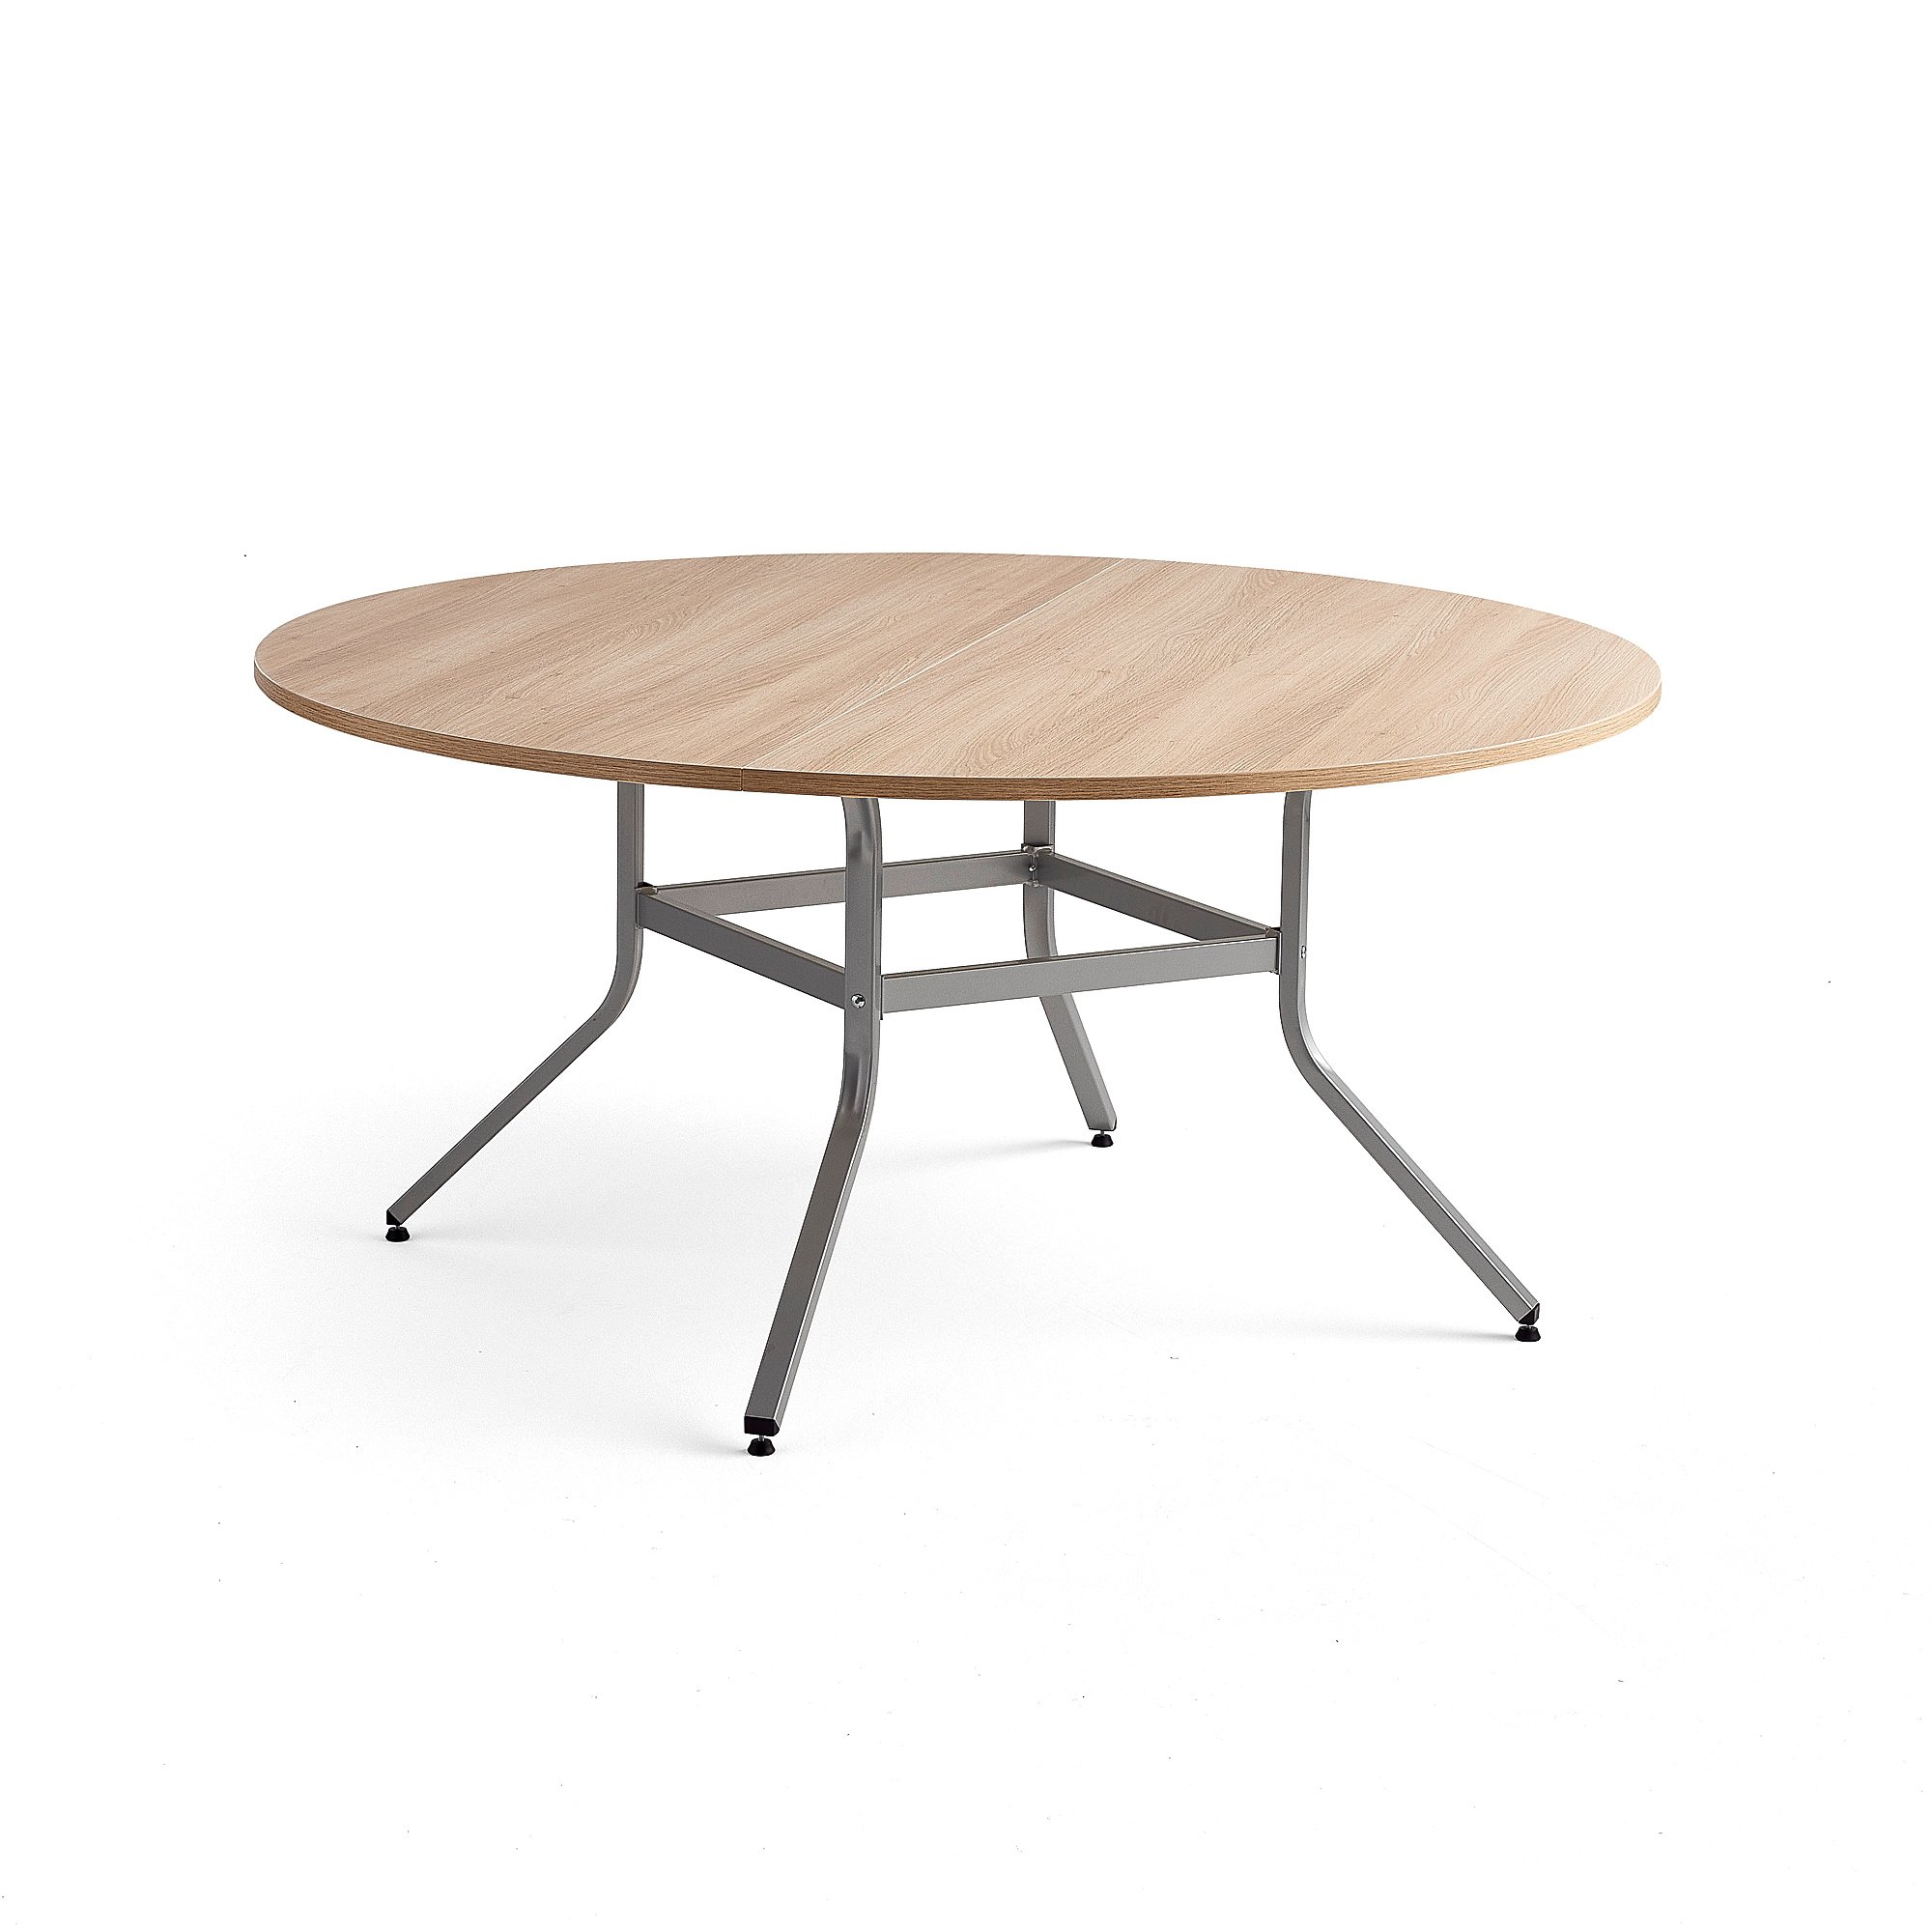 Stůl VARIOUS, Ø1600 mm, výška 740 mm, stříbrná, dub